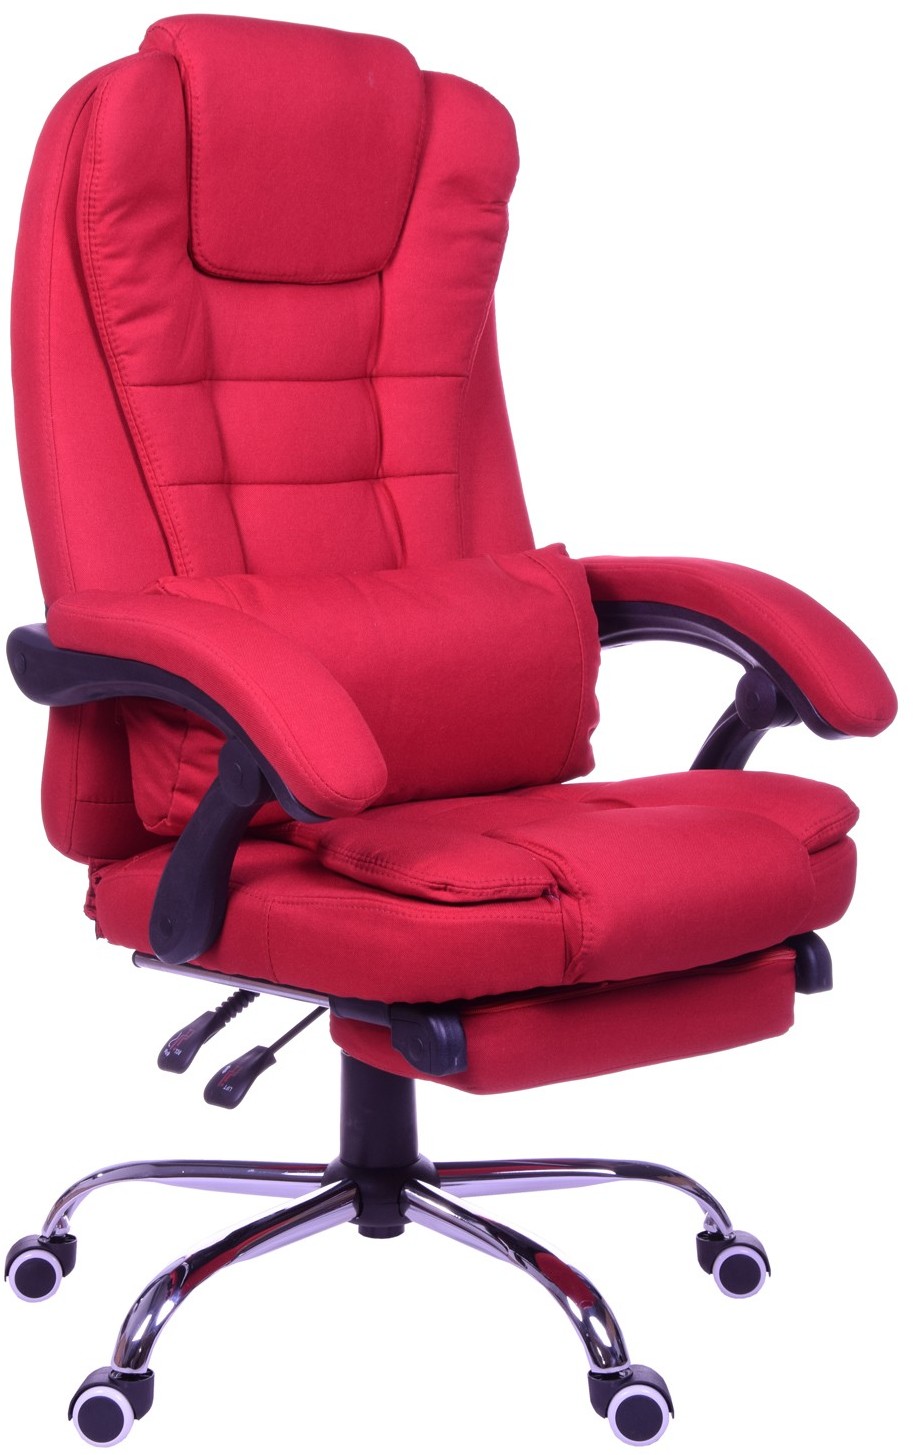 Giosedio Fotel biurowy GIOSEDIO czerwony, model FBR001